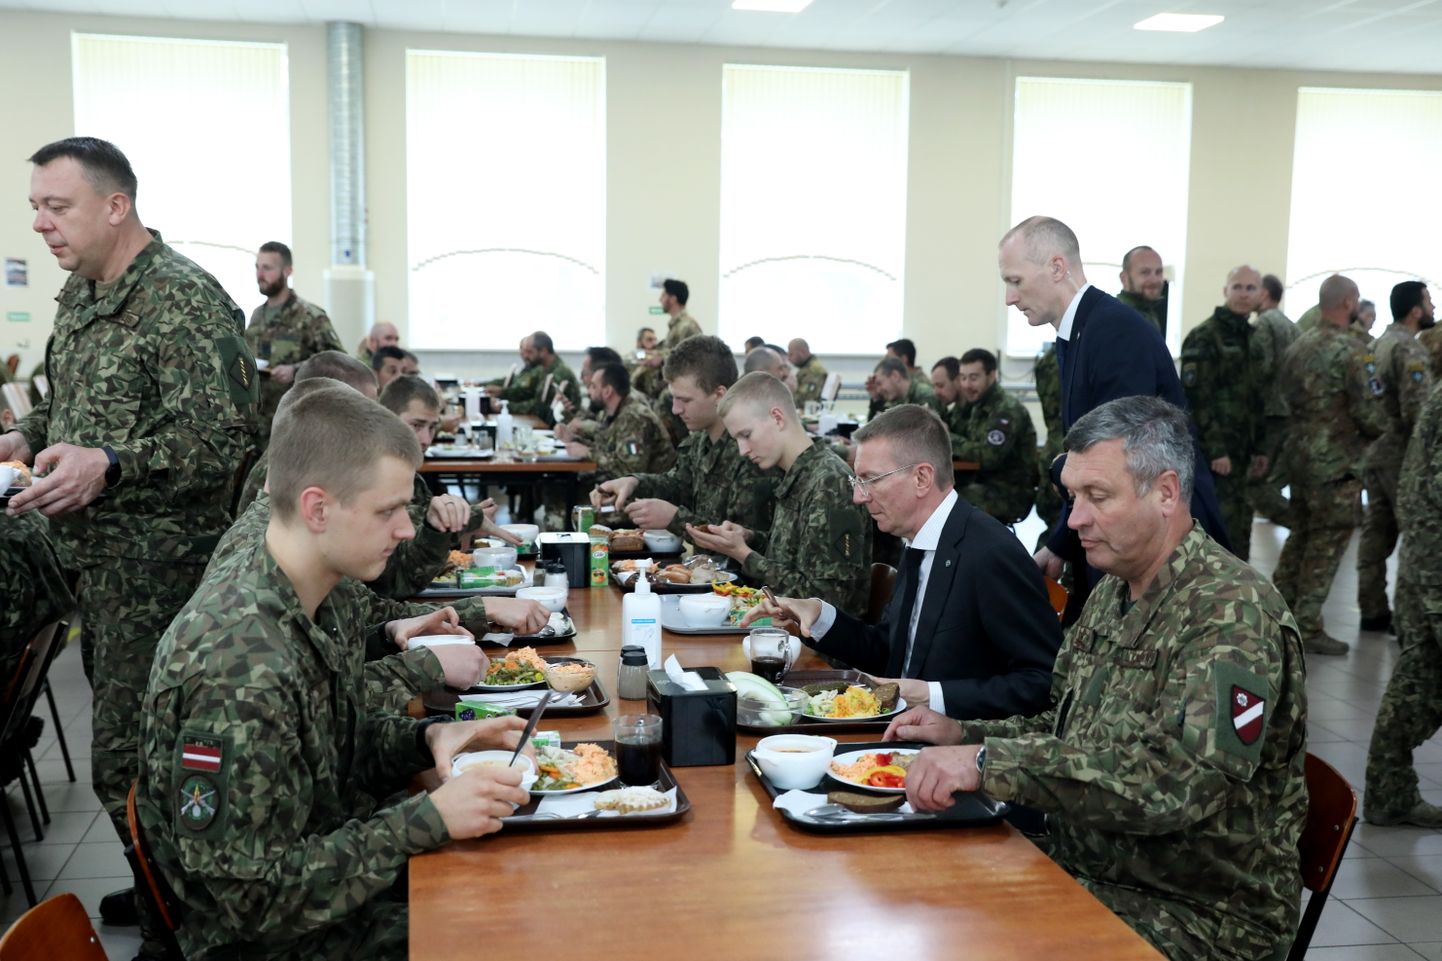 Nacionālo bruņoto spēku (NBS) komandieris ģenerālleitnants Leonīds Kalniņš (no labās) un Valsts prezidents Edgars Rinkēvičs NBS Ādažu bāzes ēdnīcas apmeklējuma laikā.